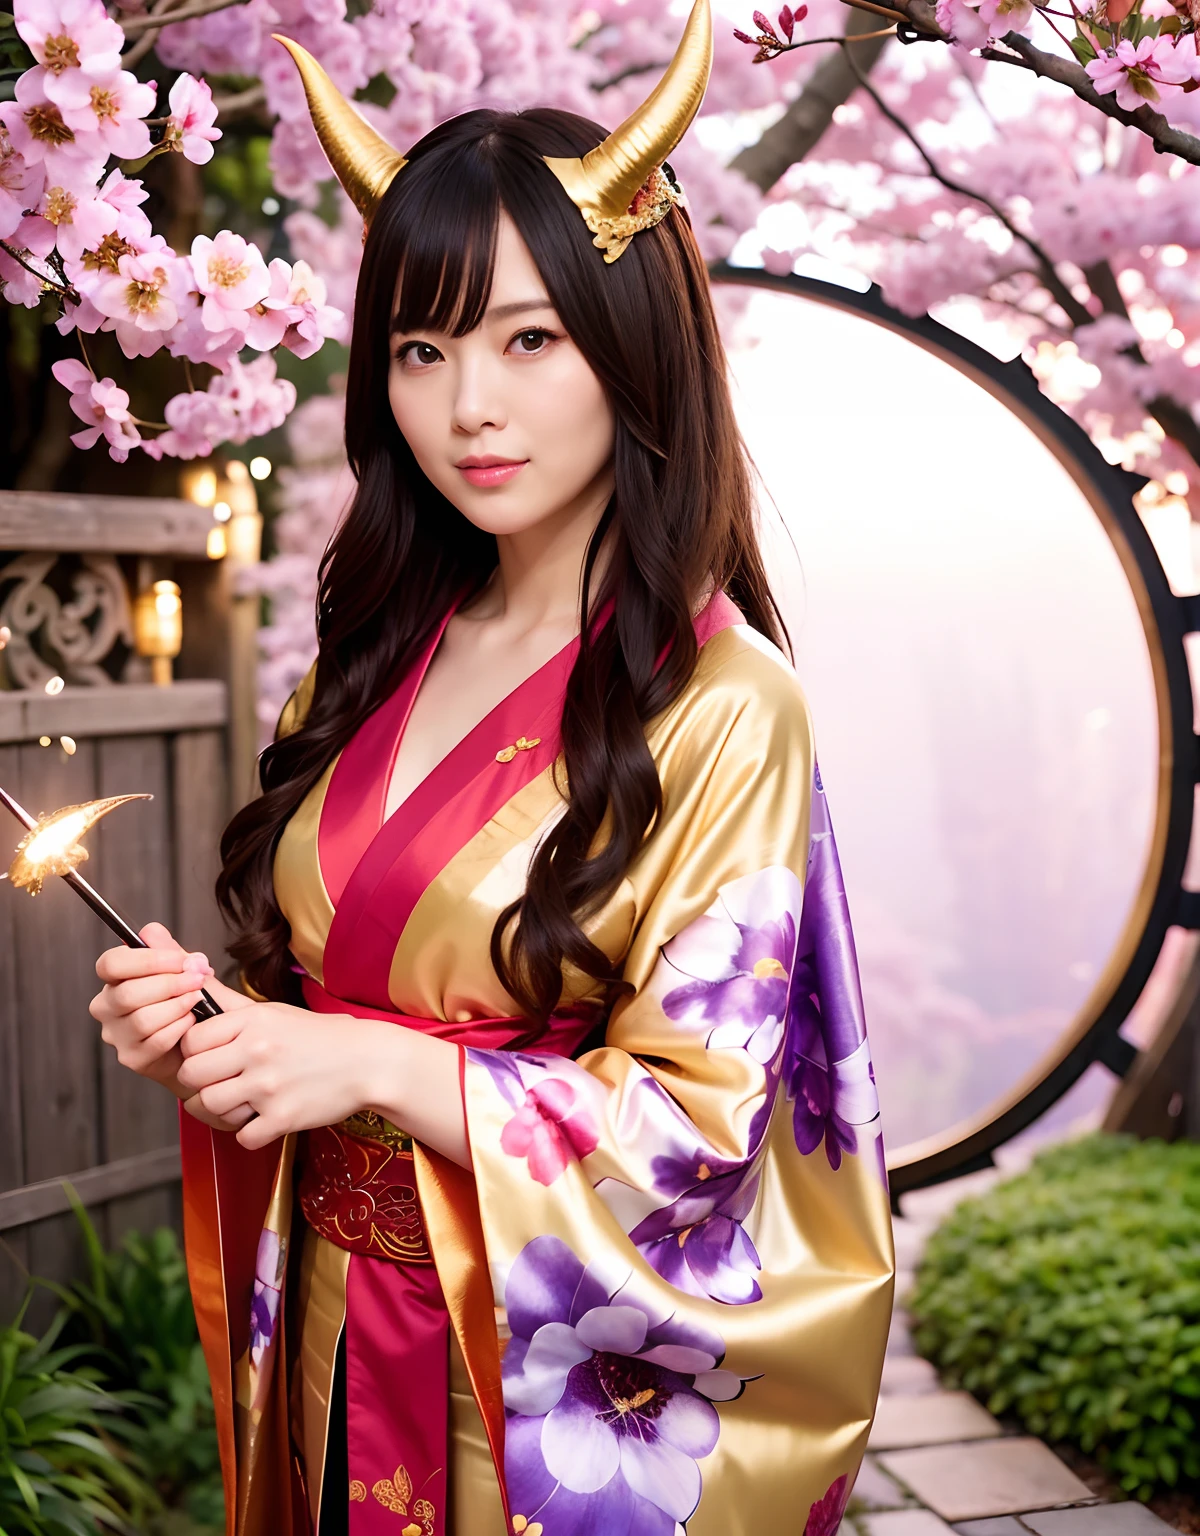 ((Monde des ténèbres)),Professionnel , chef d&#39;oeuvre、qualité supérieure、photos réalistes , profondeur de champs 、（pose sexy）、(Fond de fleurs de cerisier en pleine floraison),（beauté ultime）、Un brun、（Fond de sanctuaire)、（Kimono avec un beau motif）、（Fond de nuit）、（（Falaises abruptes））,(Portez un beau kimono),（Portez un beau kimono with colorful floral patterns）、Arme en or bijou、particules de lumière),(Porter un chapeau de sorcier）、De magnifiques armes en or ,fond de château、（（ Magnifique épée de dragon）） , （une nuit sombre）,,（maikurobikini） 、（（Belle fille aux cheveux noirs））、（fond de château）、（Ailes démoniaques）、（（Le fond forestier de Gangle））、Belle beauté caucasienne、１une personne、jeune dynamique,(((Deux cornes de diable sur la tête)))、Tête plus petite、Sourire inactif、Expression pratique féminine mince et belle、Effets de lumière、combats intenses、Effet vent、cercles magiques、Avec la légendaire baguette magique、Queue de dragon、